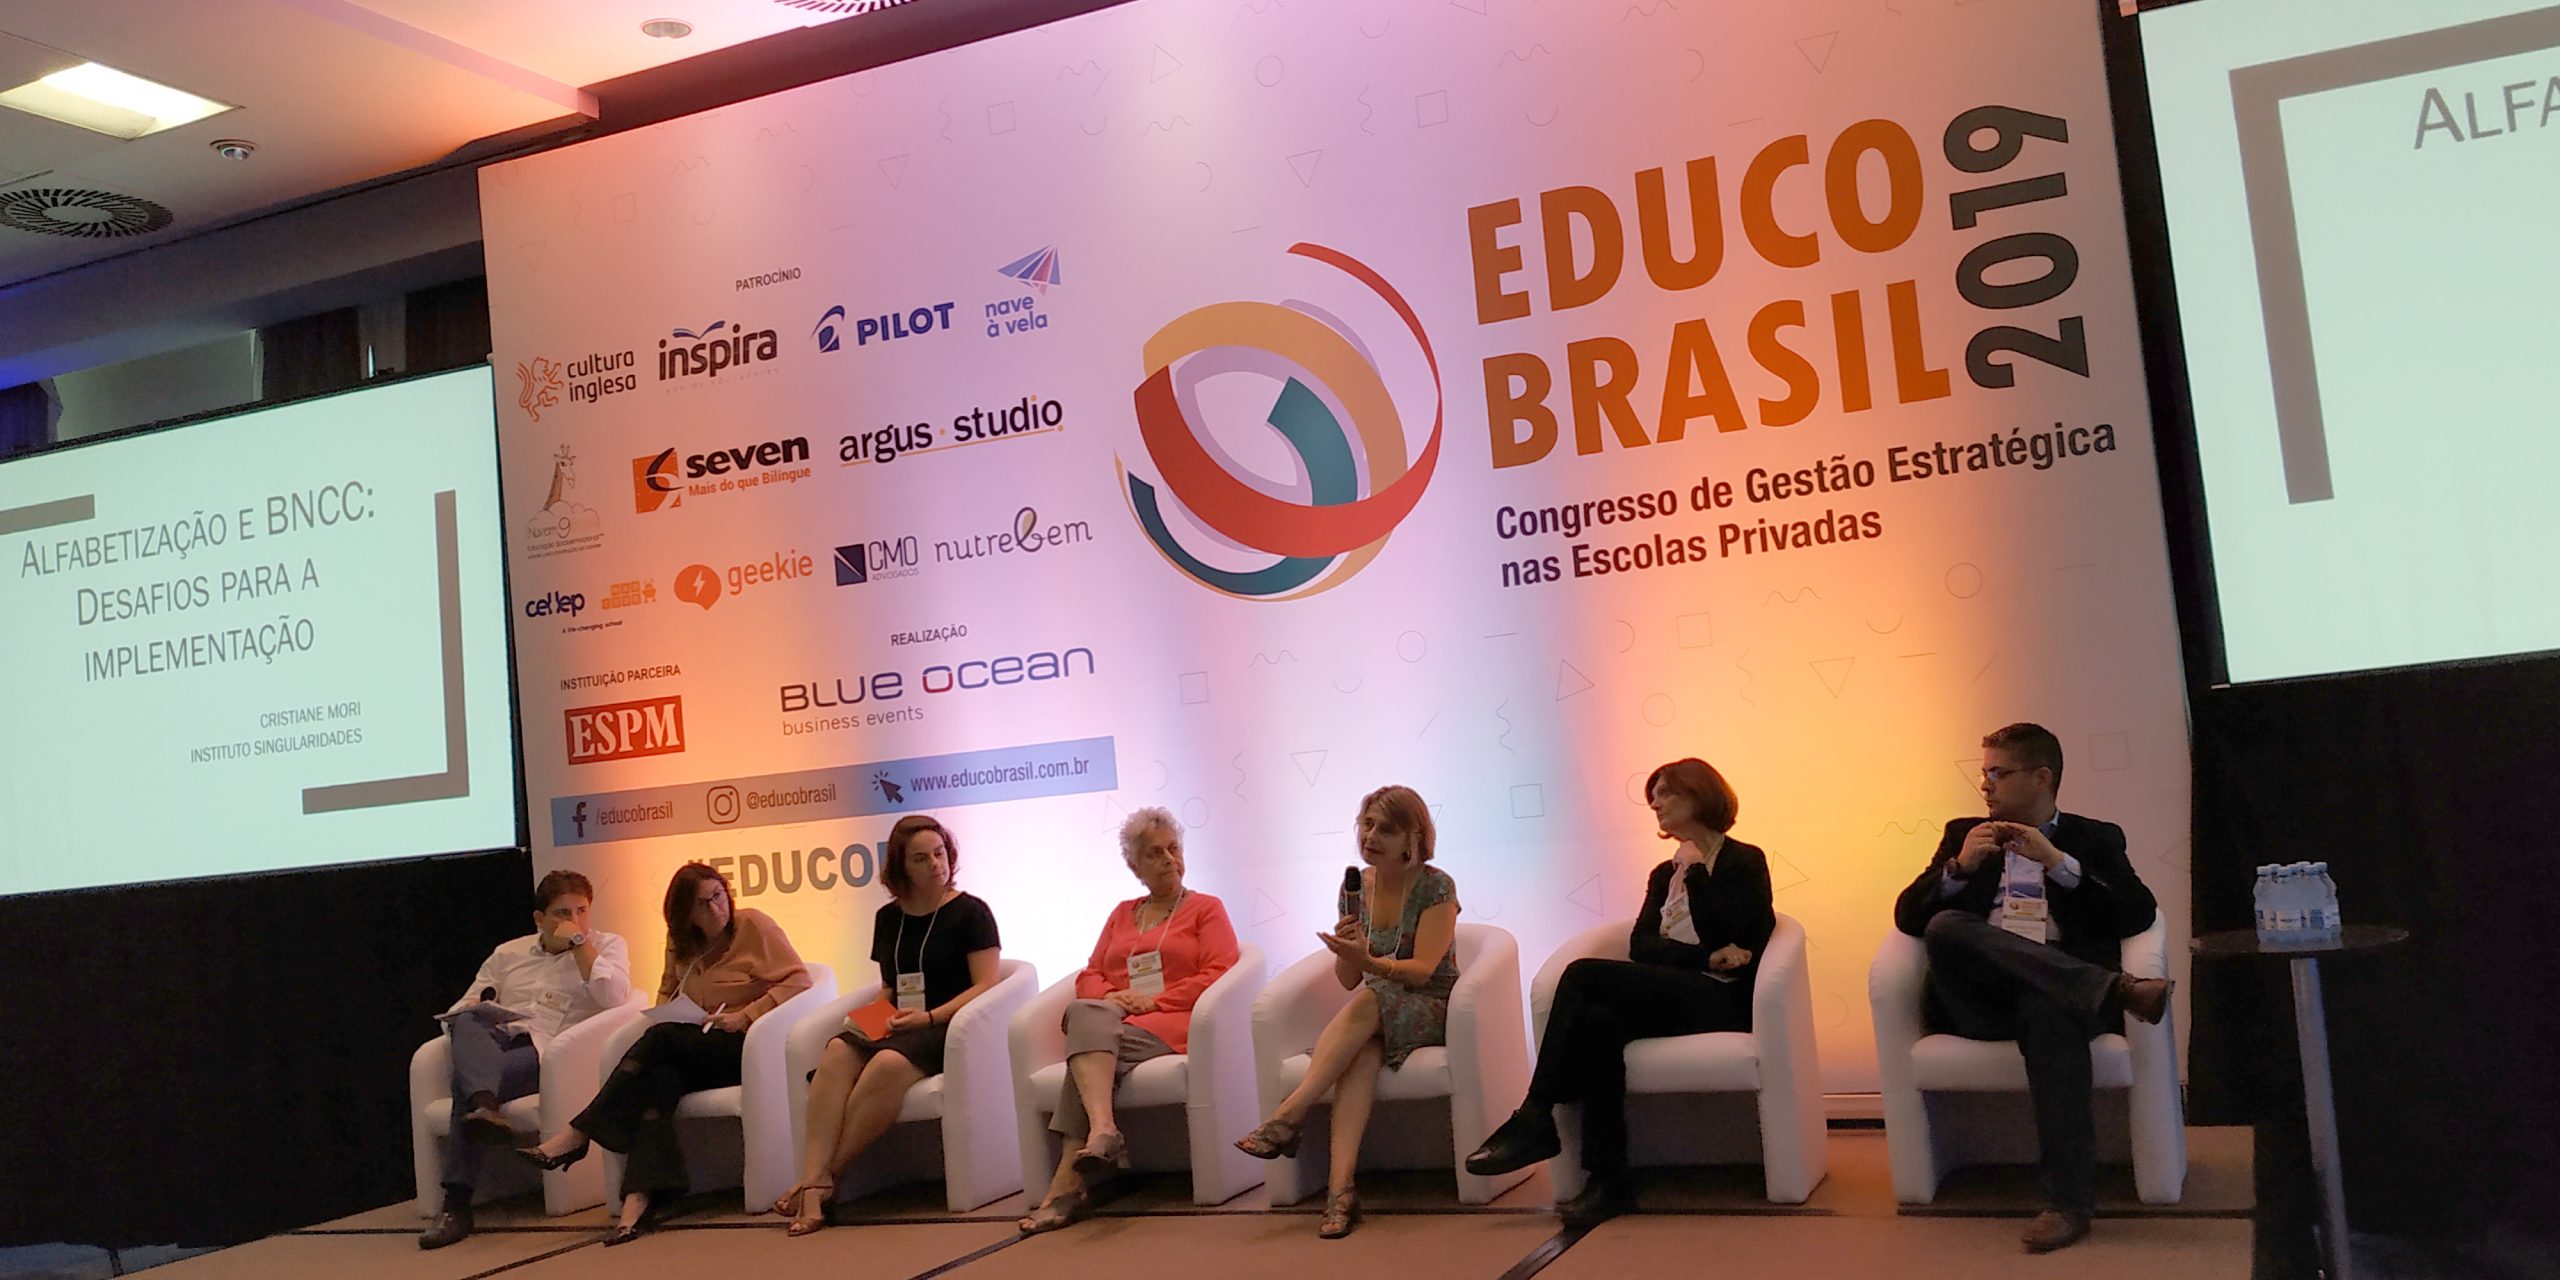 Geekie - Equipe de gestoras debatem bilinguismo no Educo 2019